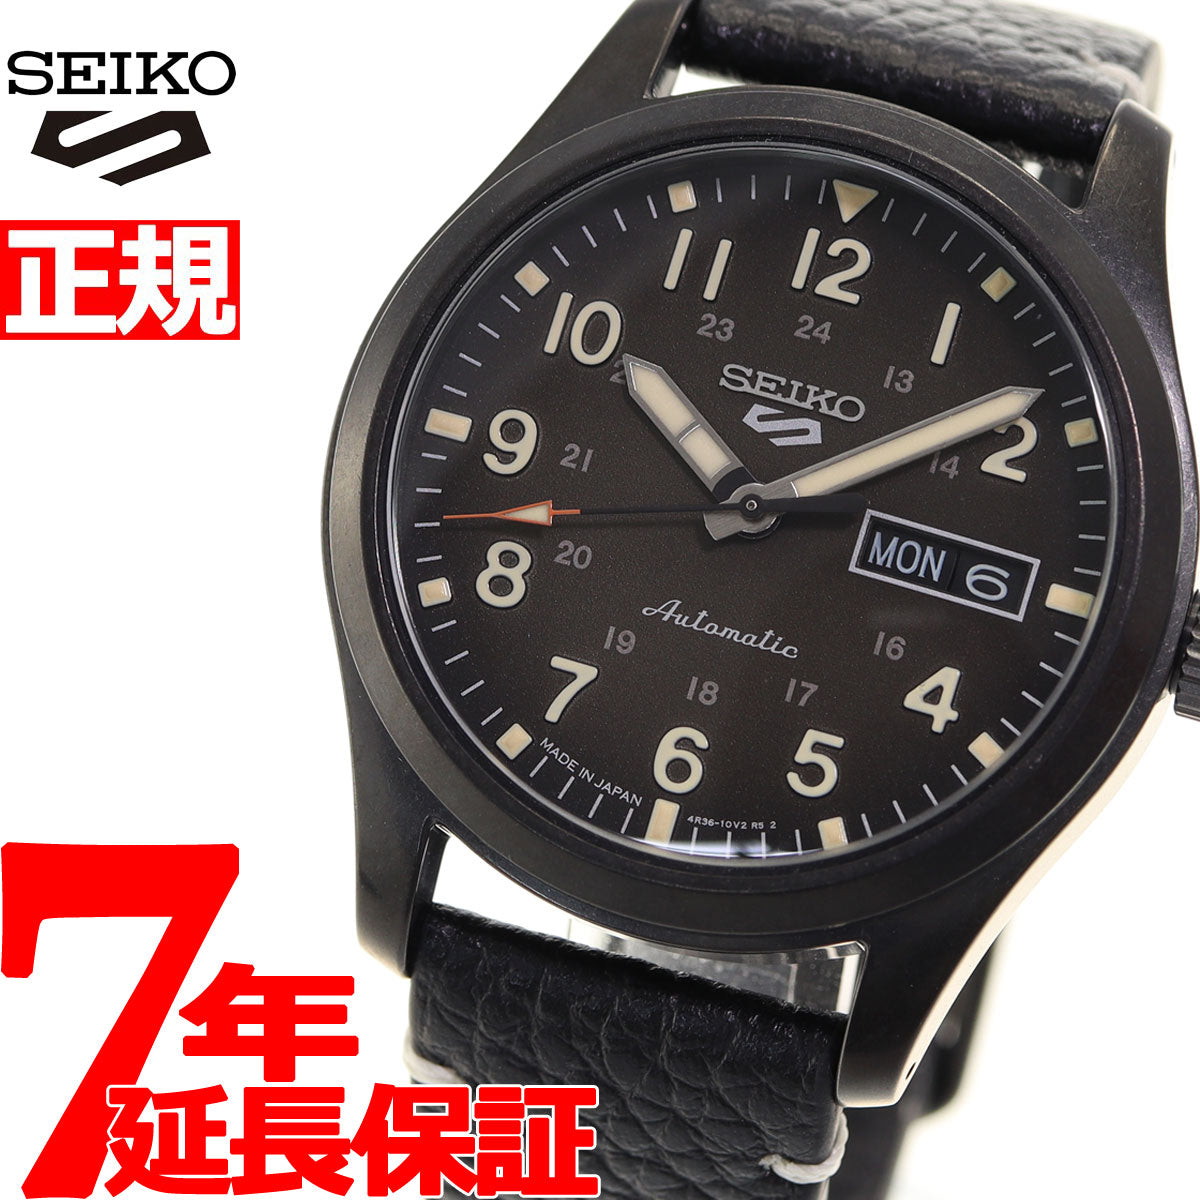 セイコー5 スポーツ SEIKO 5 SPORTS 自動巻き メカニカル 流通限定モデル 腕時計 メンズ セイコーファイブ スペシャリスト  Specialist SBSA121